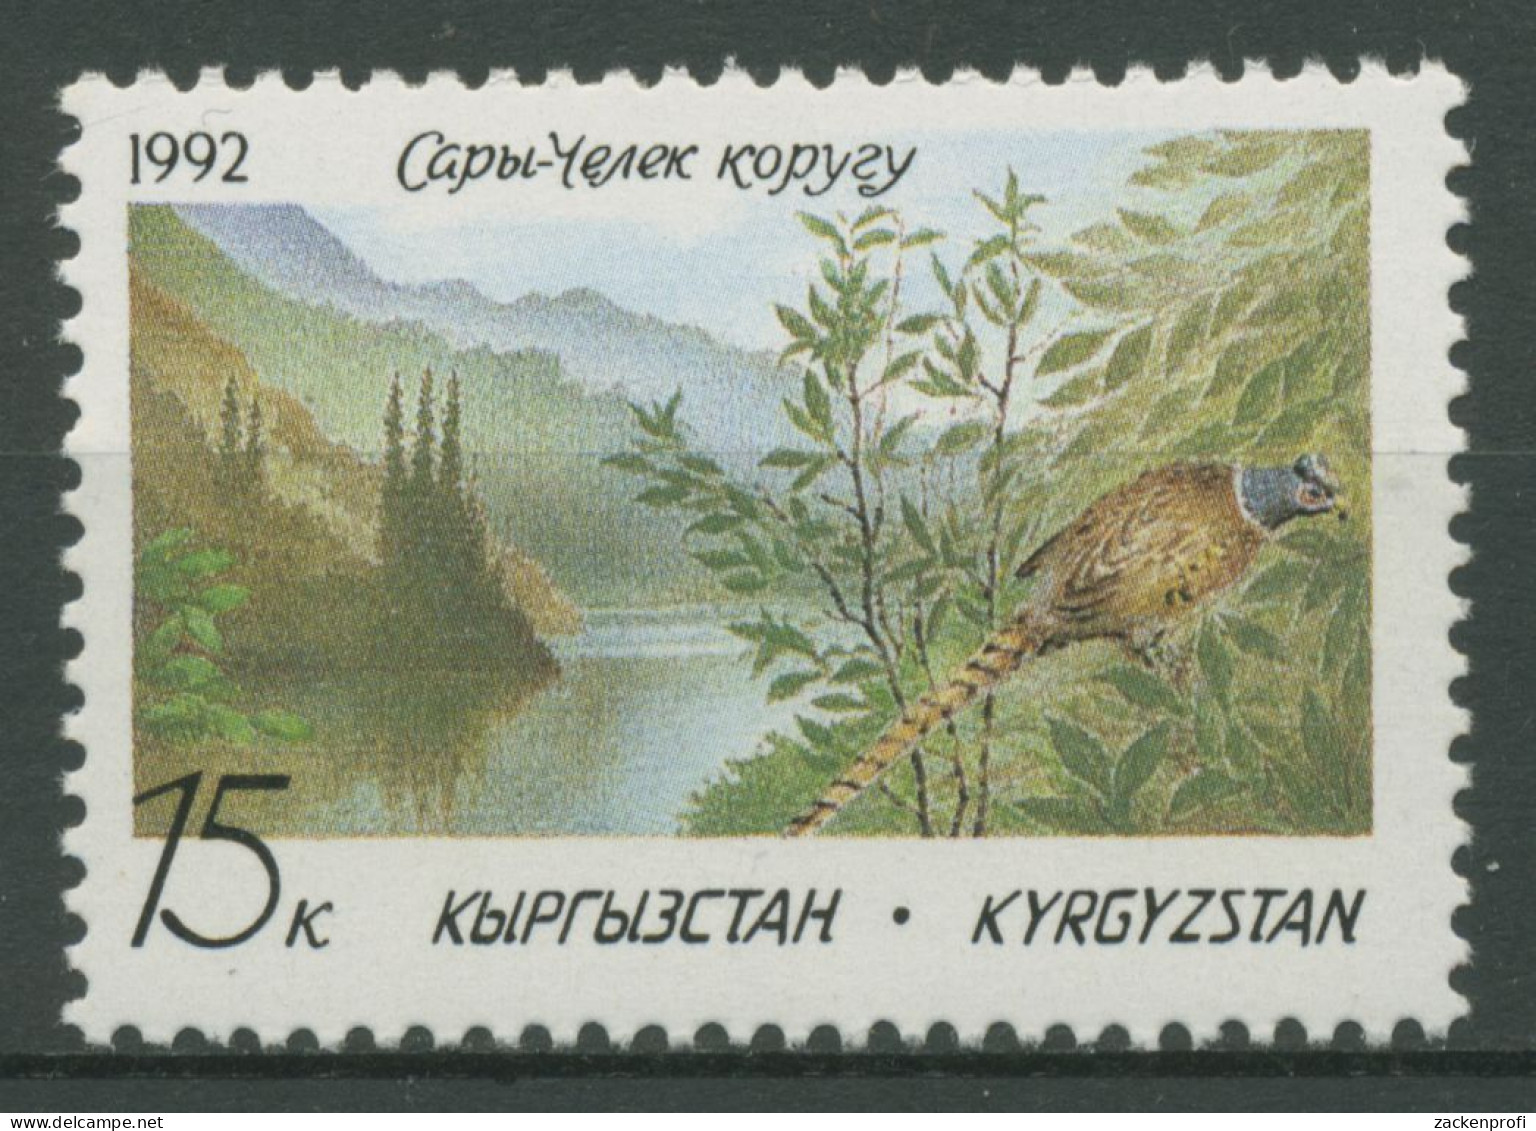 Kirgisien 1992 Naturschutz Tiere Vögel Fasan 1 Postfrisch - Kirghizistan